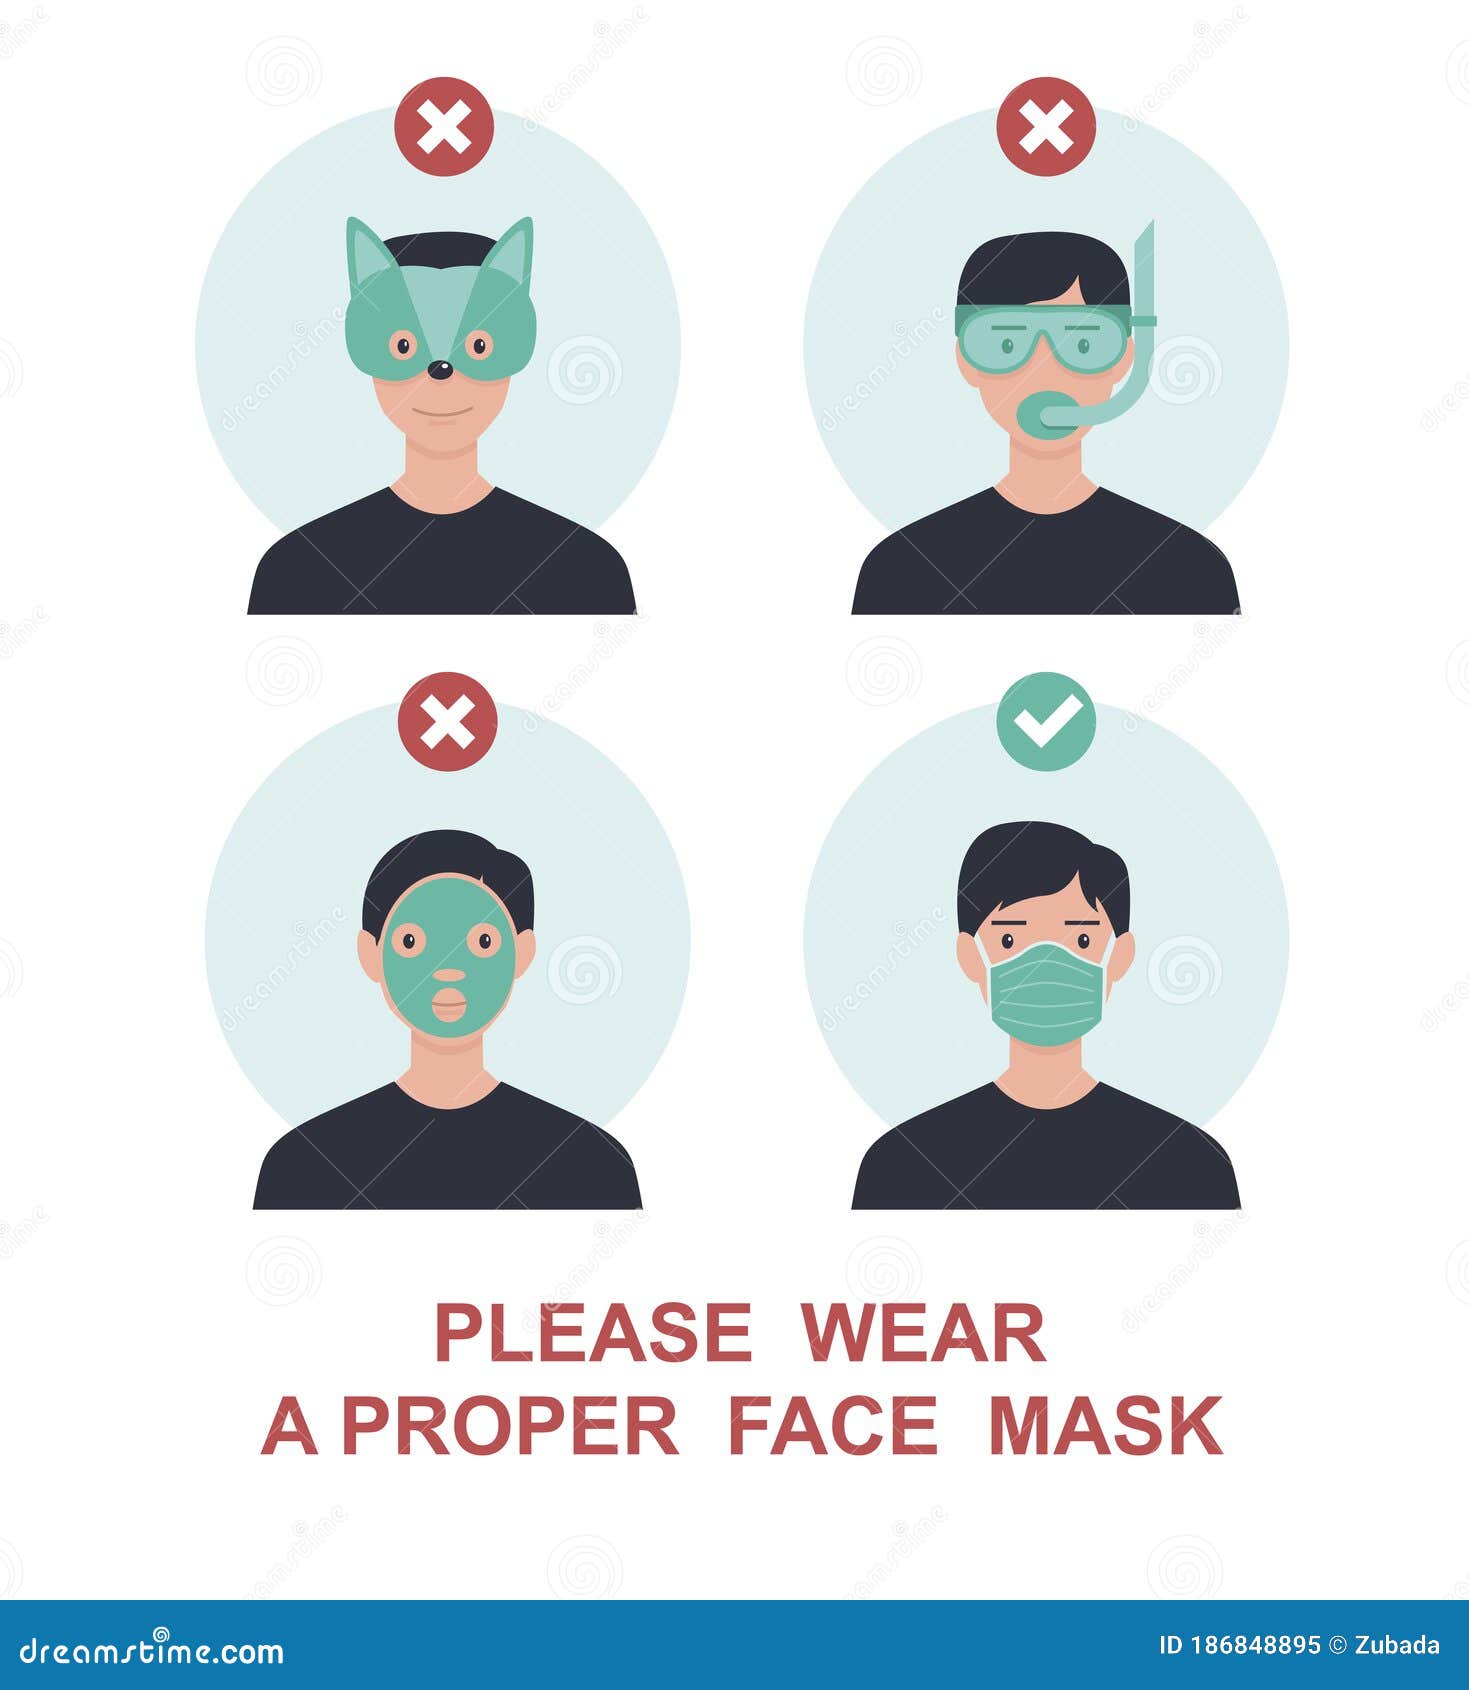 please wear a proper face mask to avoidÃÂ novel coronavirus covid-19. warning or caution sign. funny and trendy  